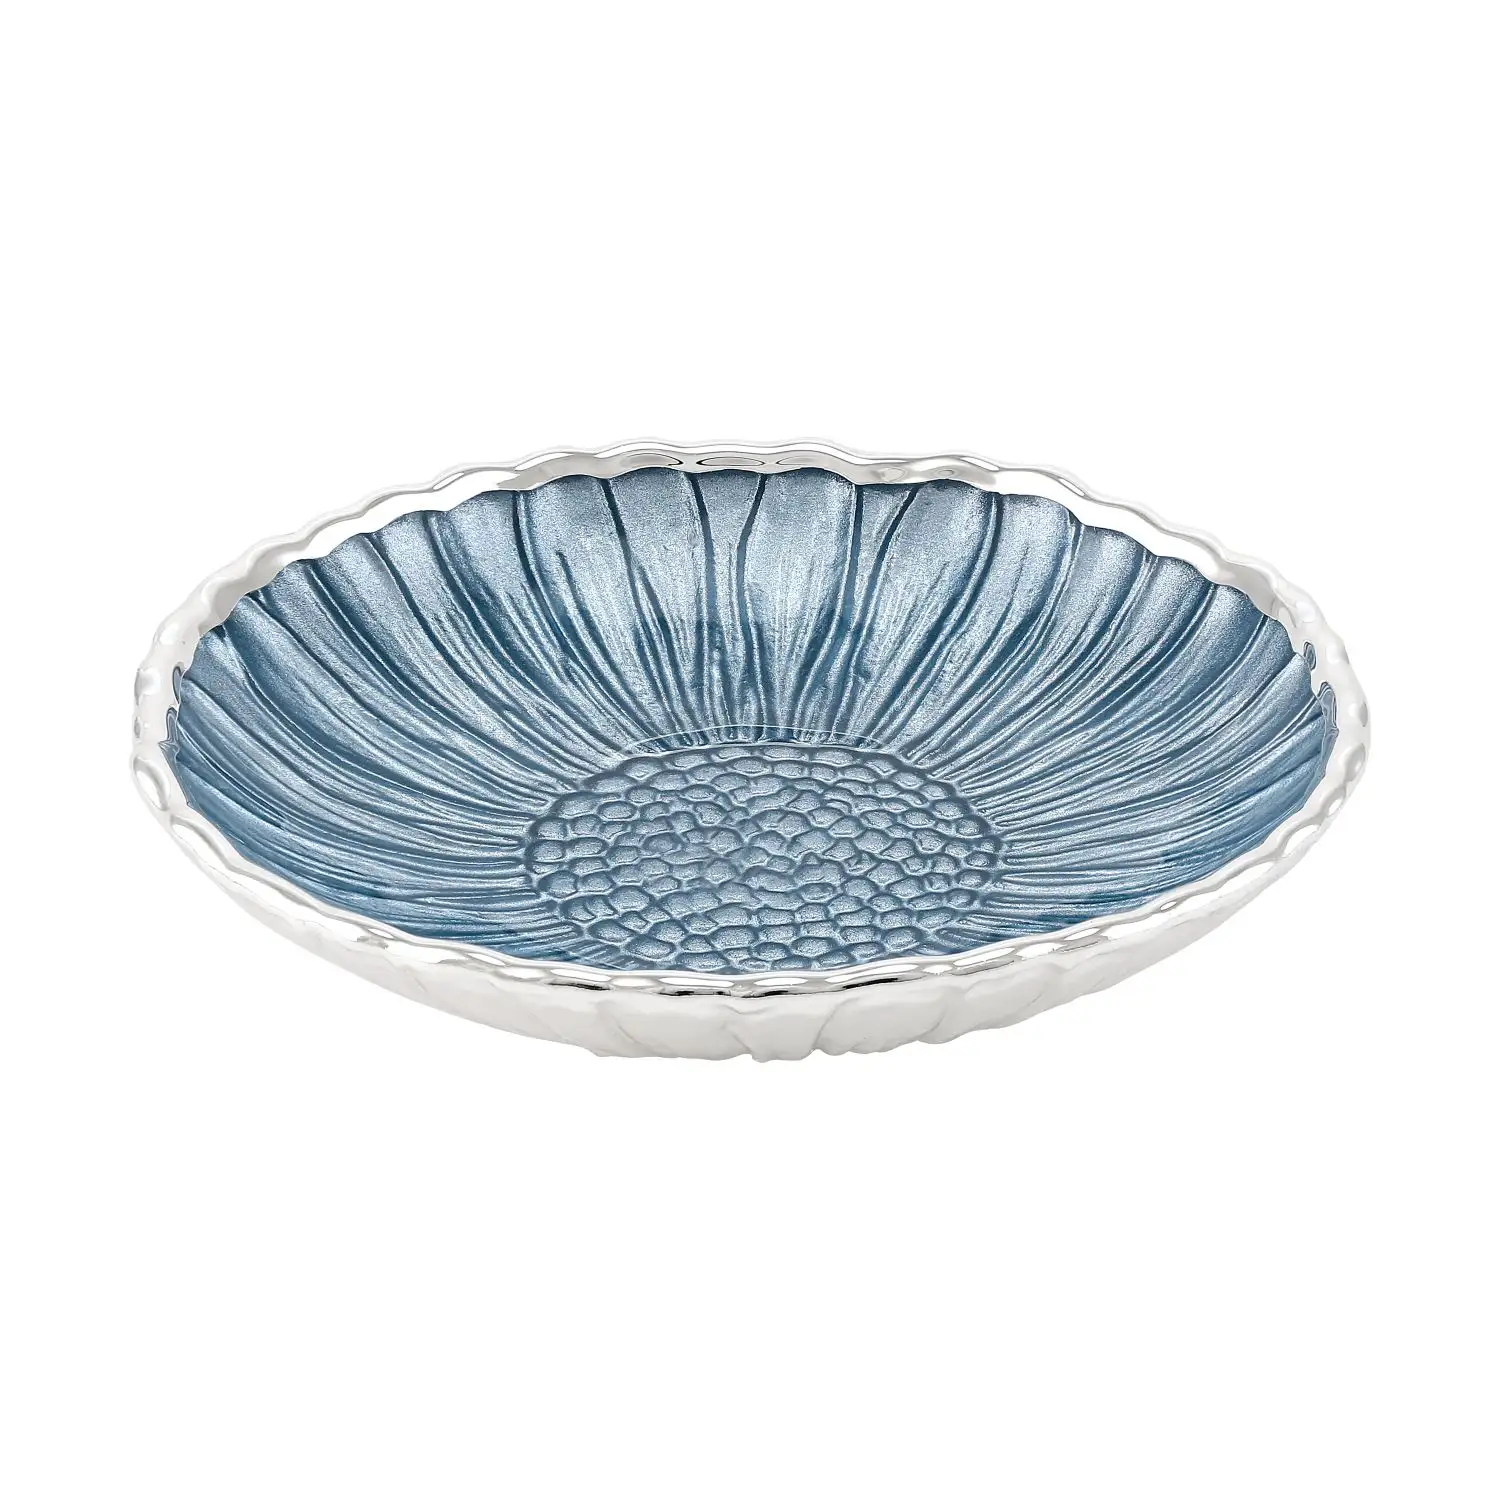 Тарелка стеклянная GIRASOLE (цвет небесно-голубой) диаметр 14 см тарелка стеклянная girasole цвет зеленый диаметр 14 см